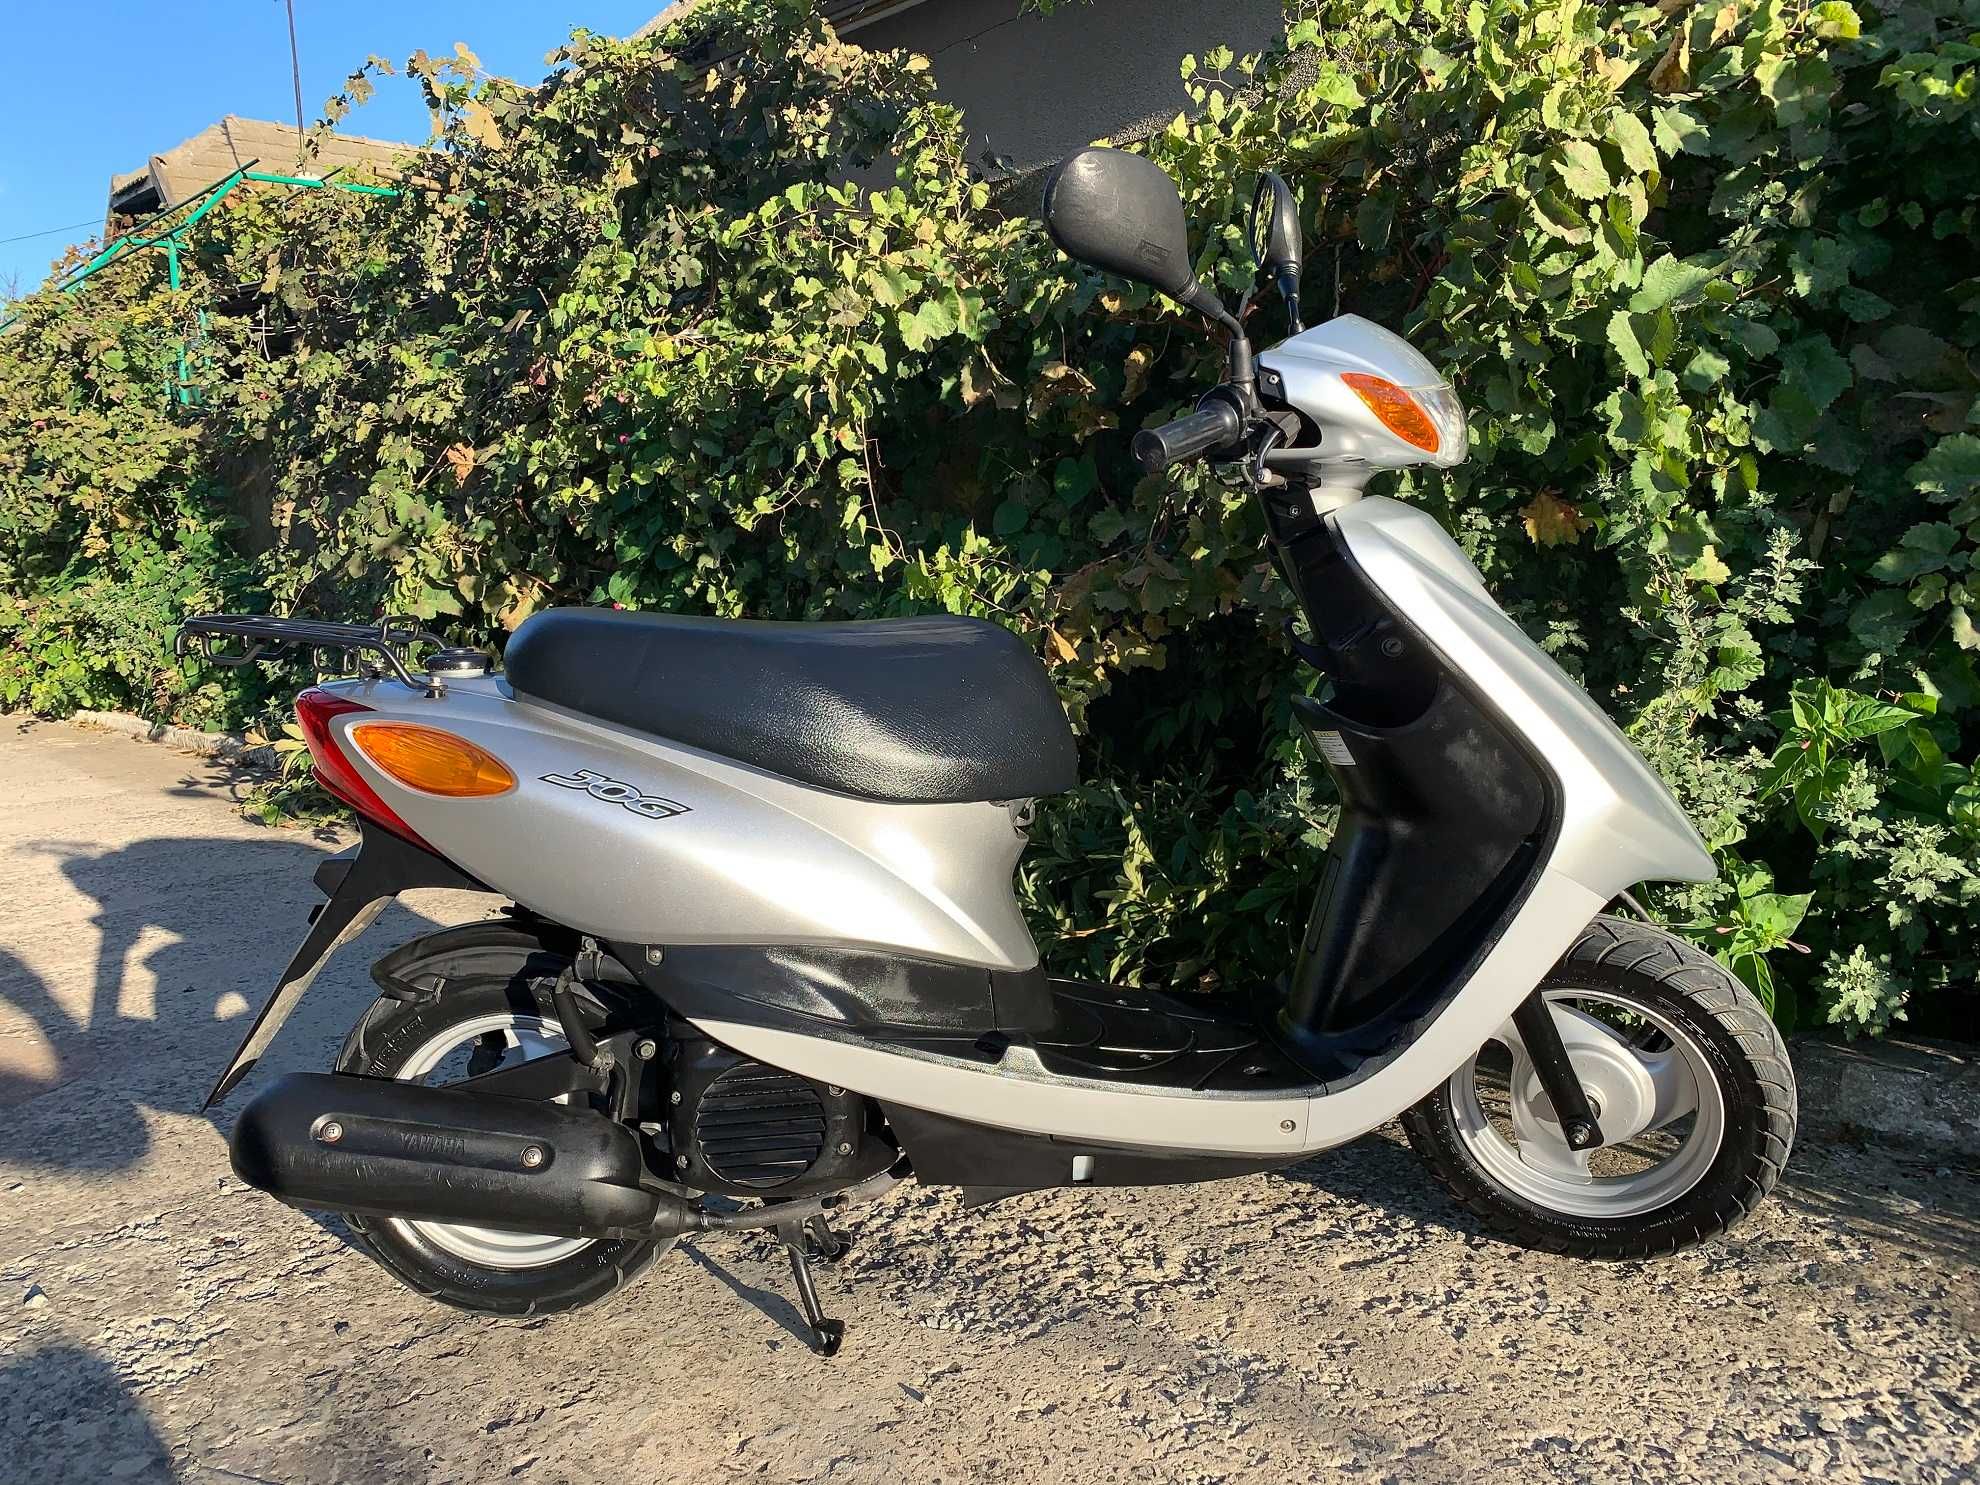 Продам скутер Yamaha SA-36J